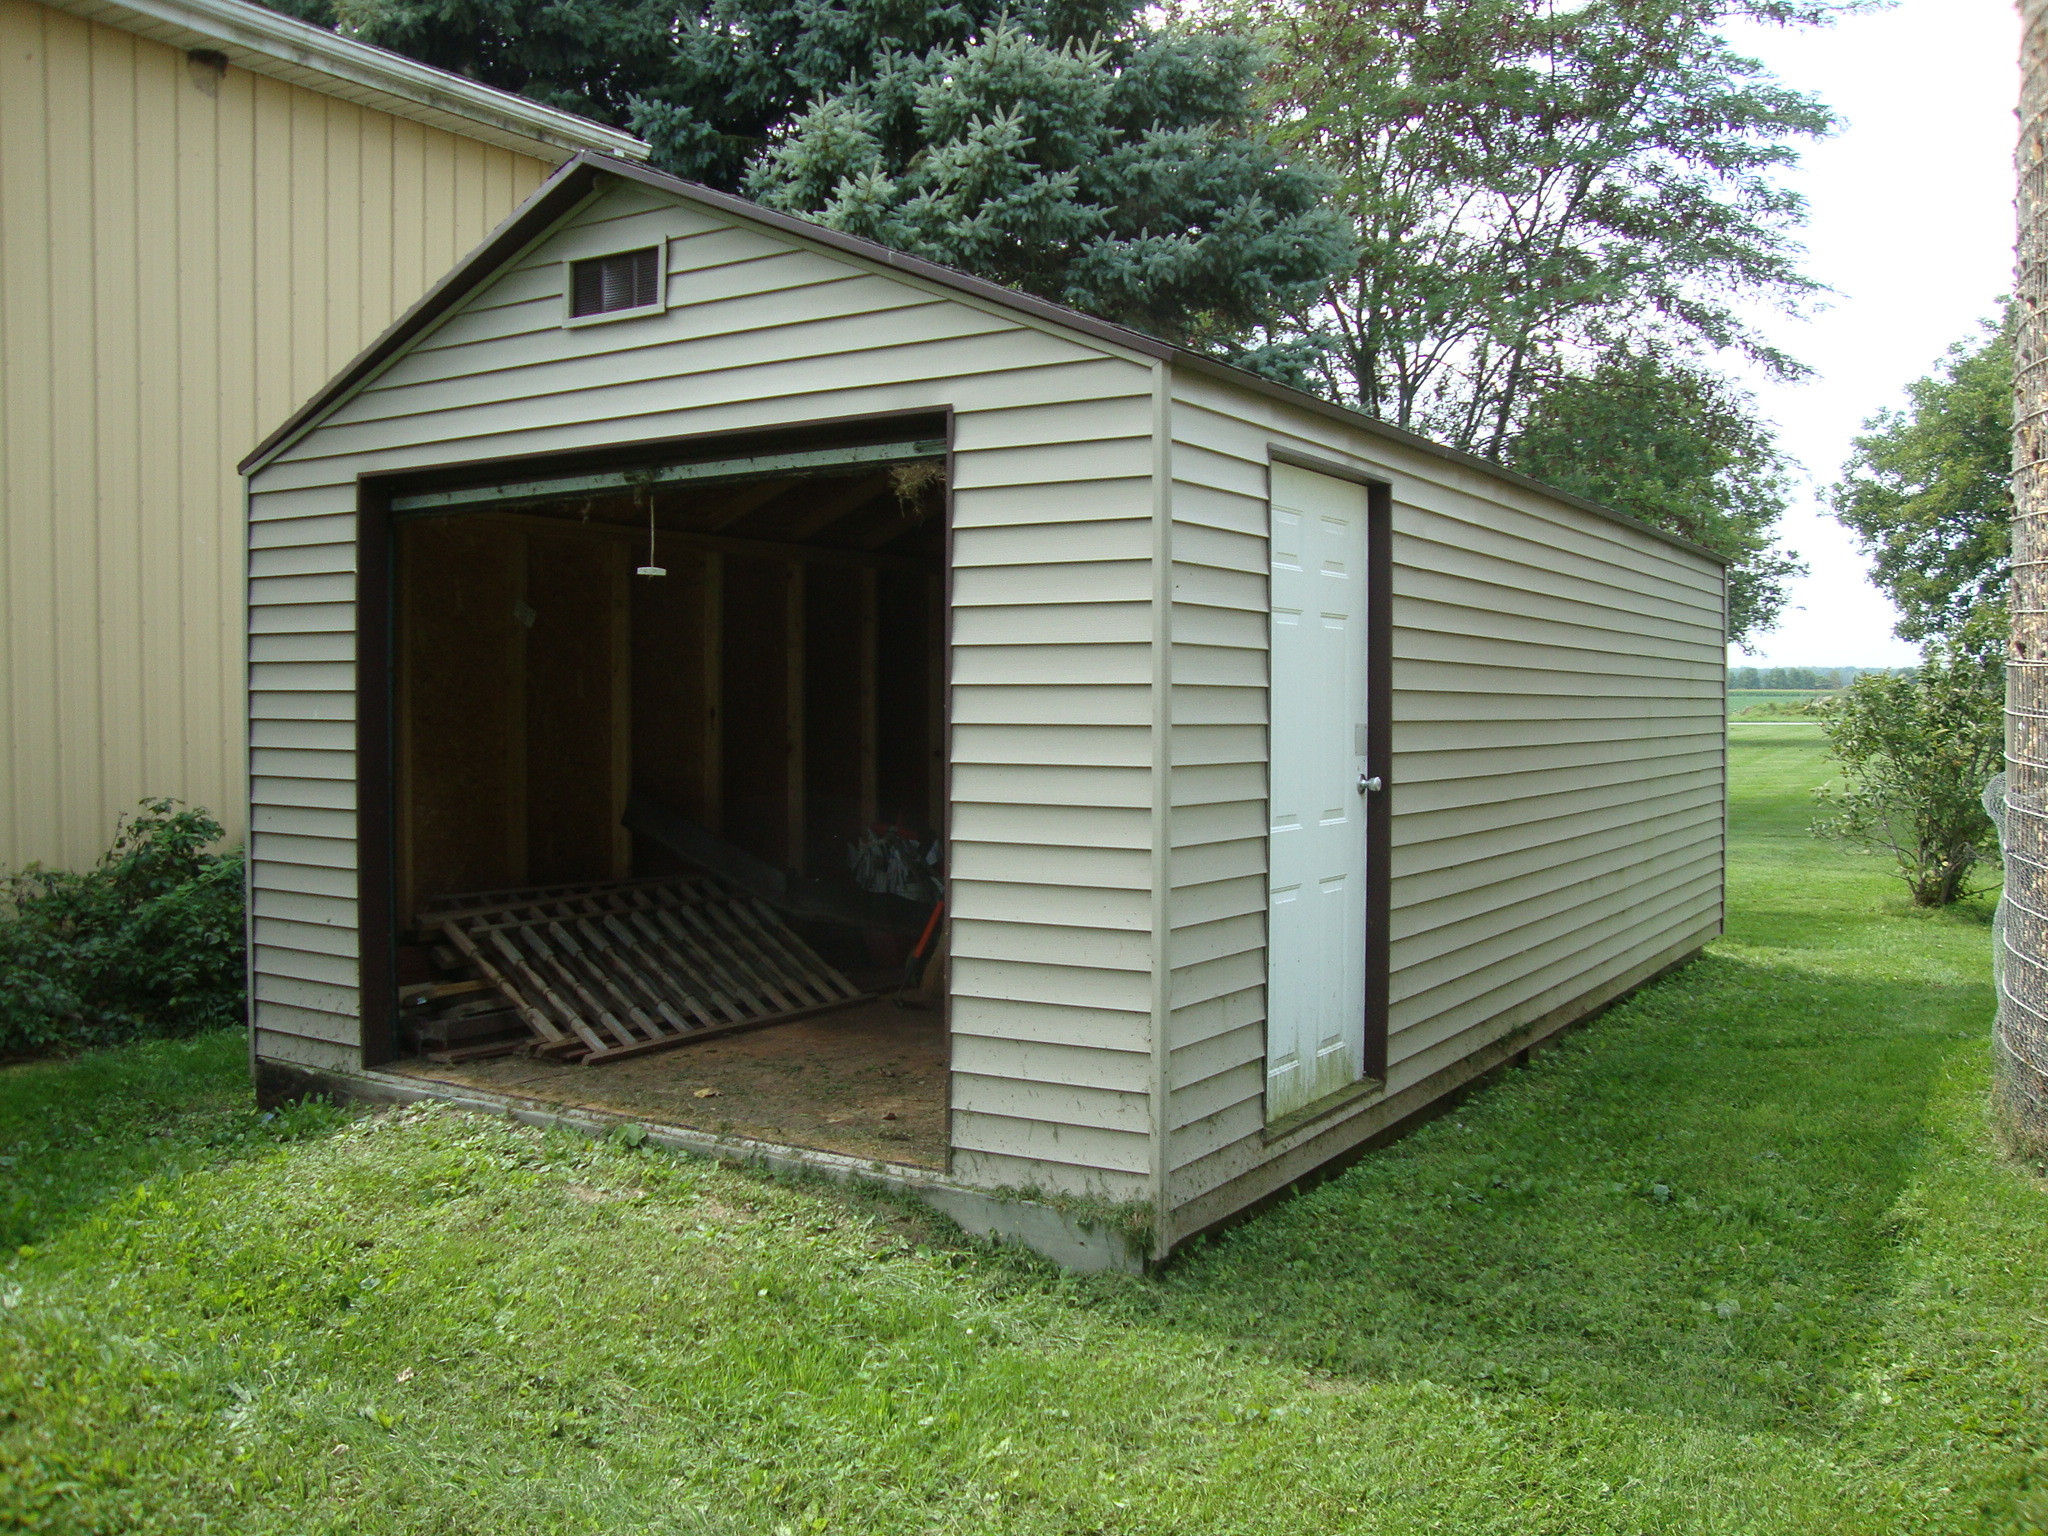 Best ideas about DIY Garage Kits Wood
. Save or Pin Garages 30x30 Garage 84 Lumber Garage Kits Now.